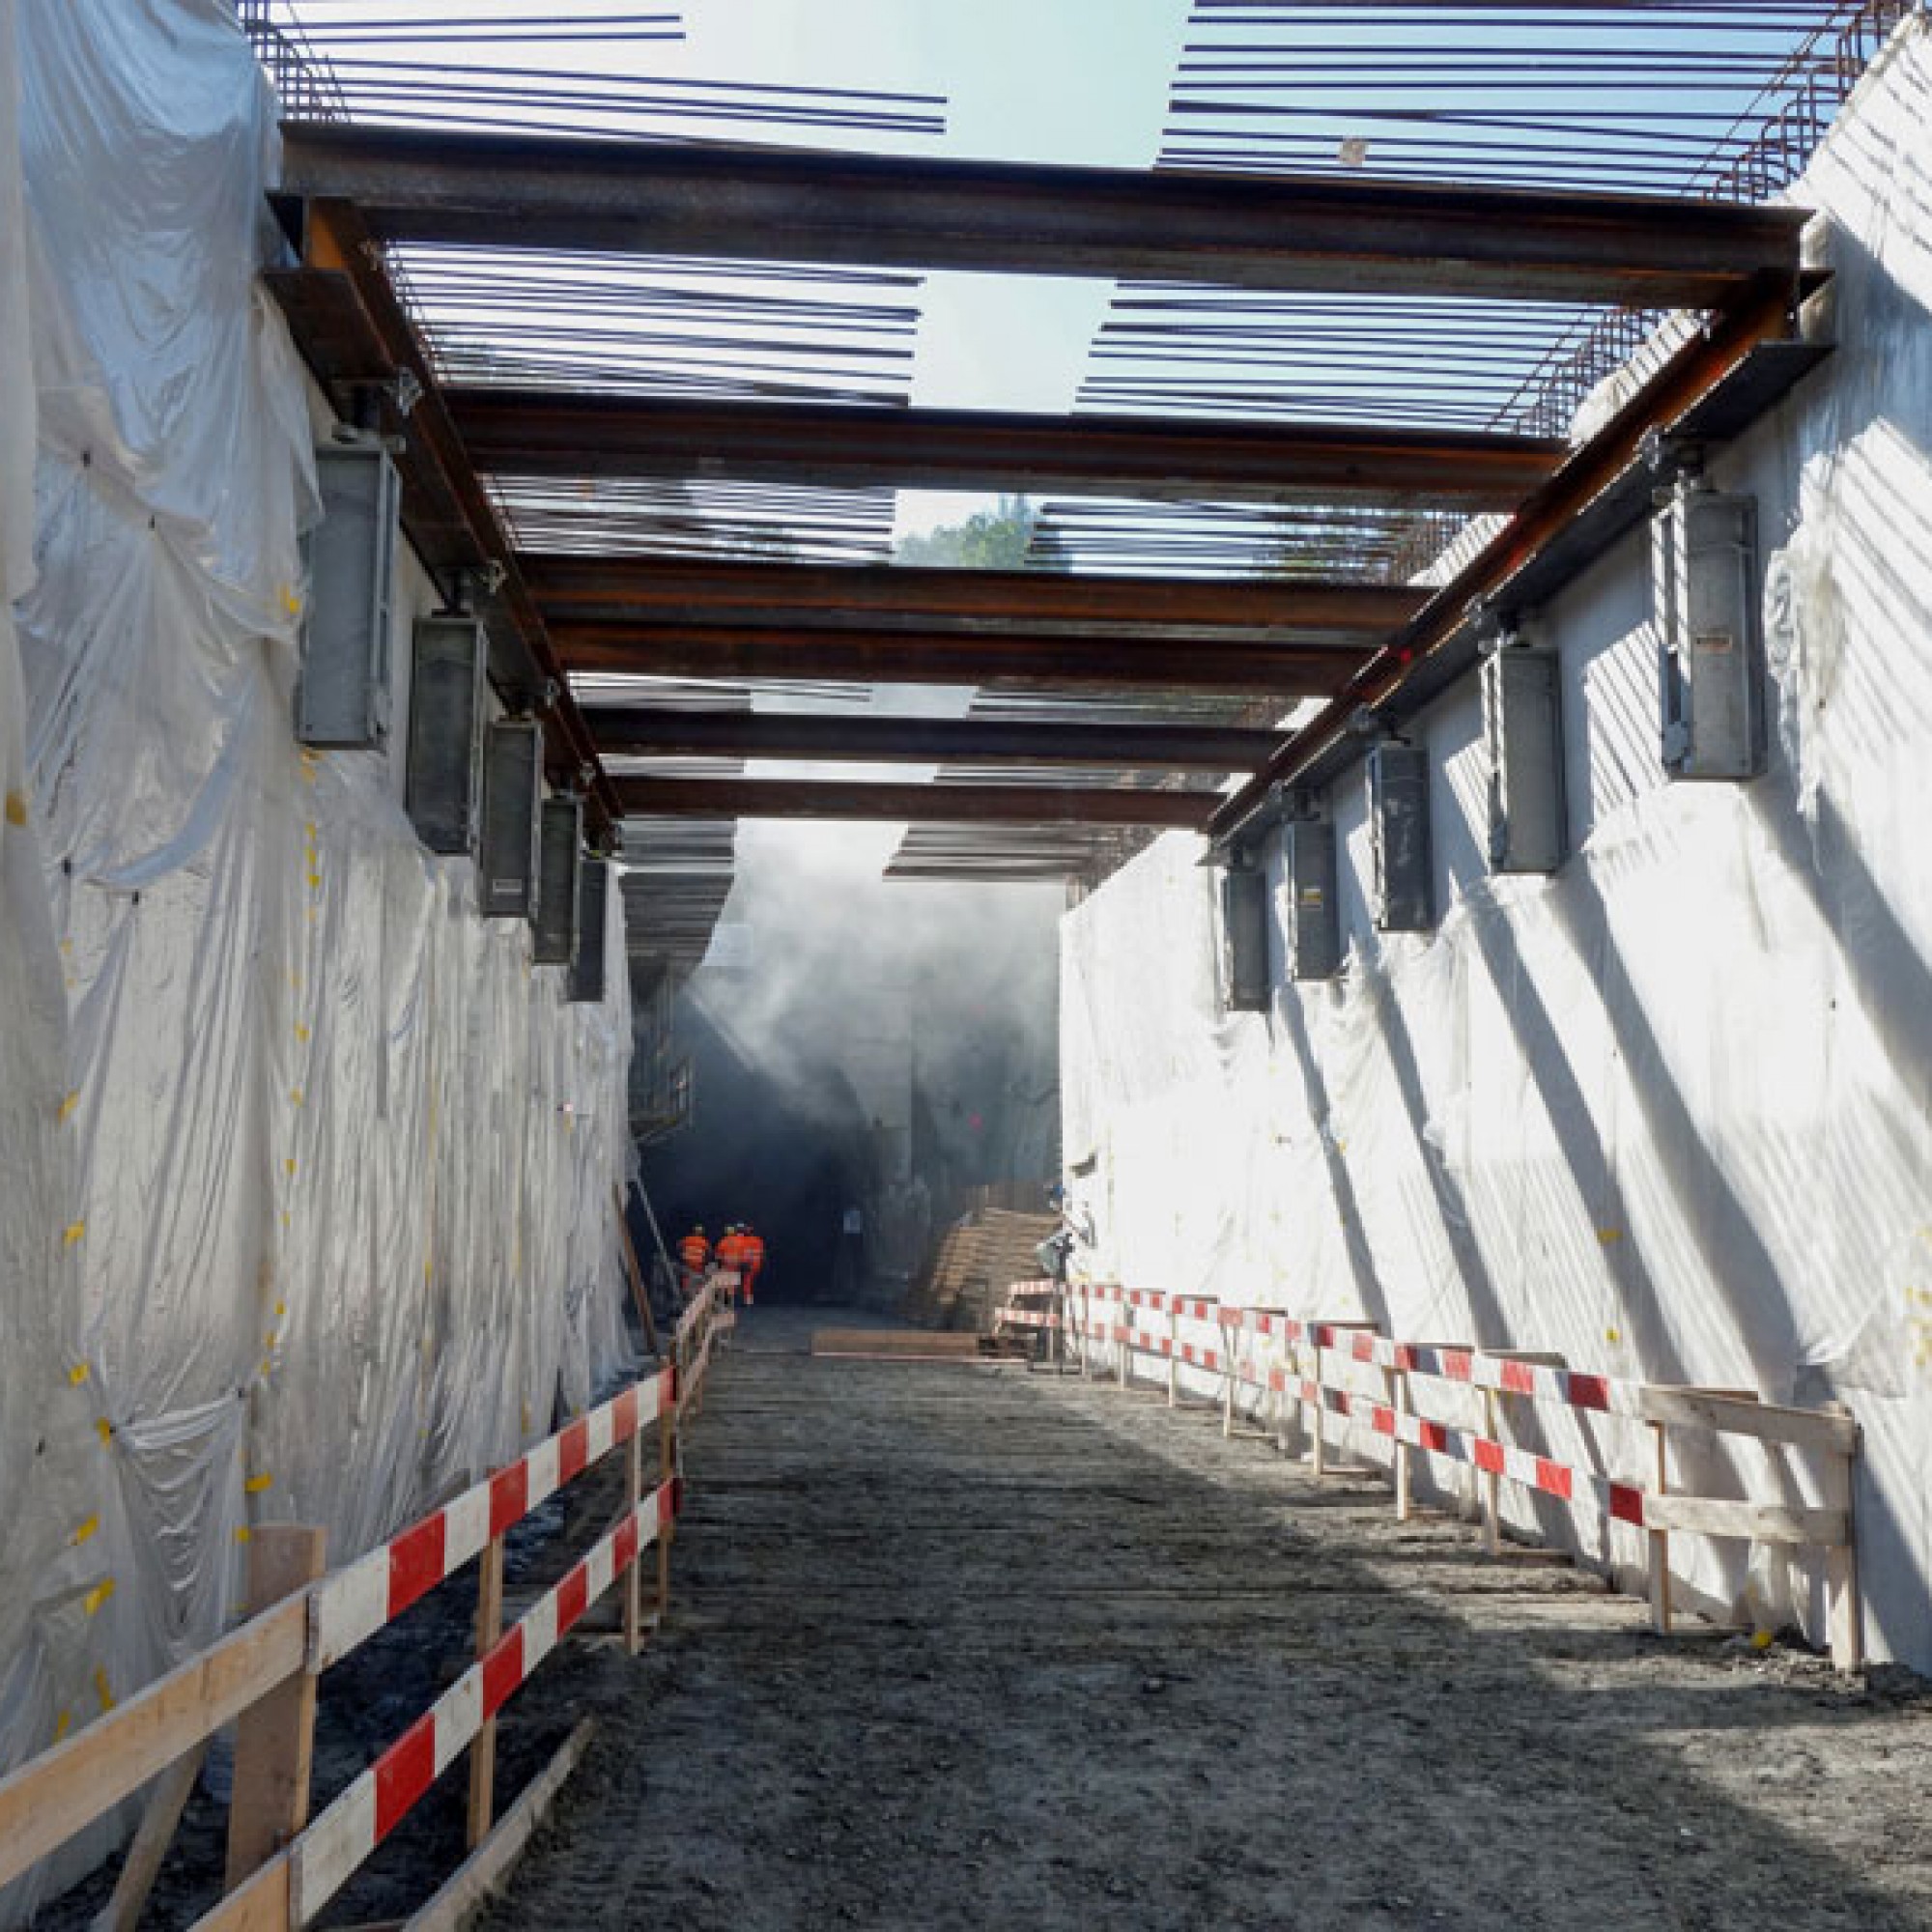 Rückblick im Oktober 2016: Der Tunnel kurz nach einer Sprengung – aus dem Durchgang dringt noch Rauch, während die Mineure schon den Erfolg des Abschlags kontrollieren.